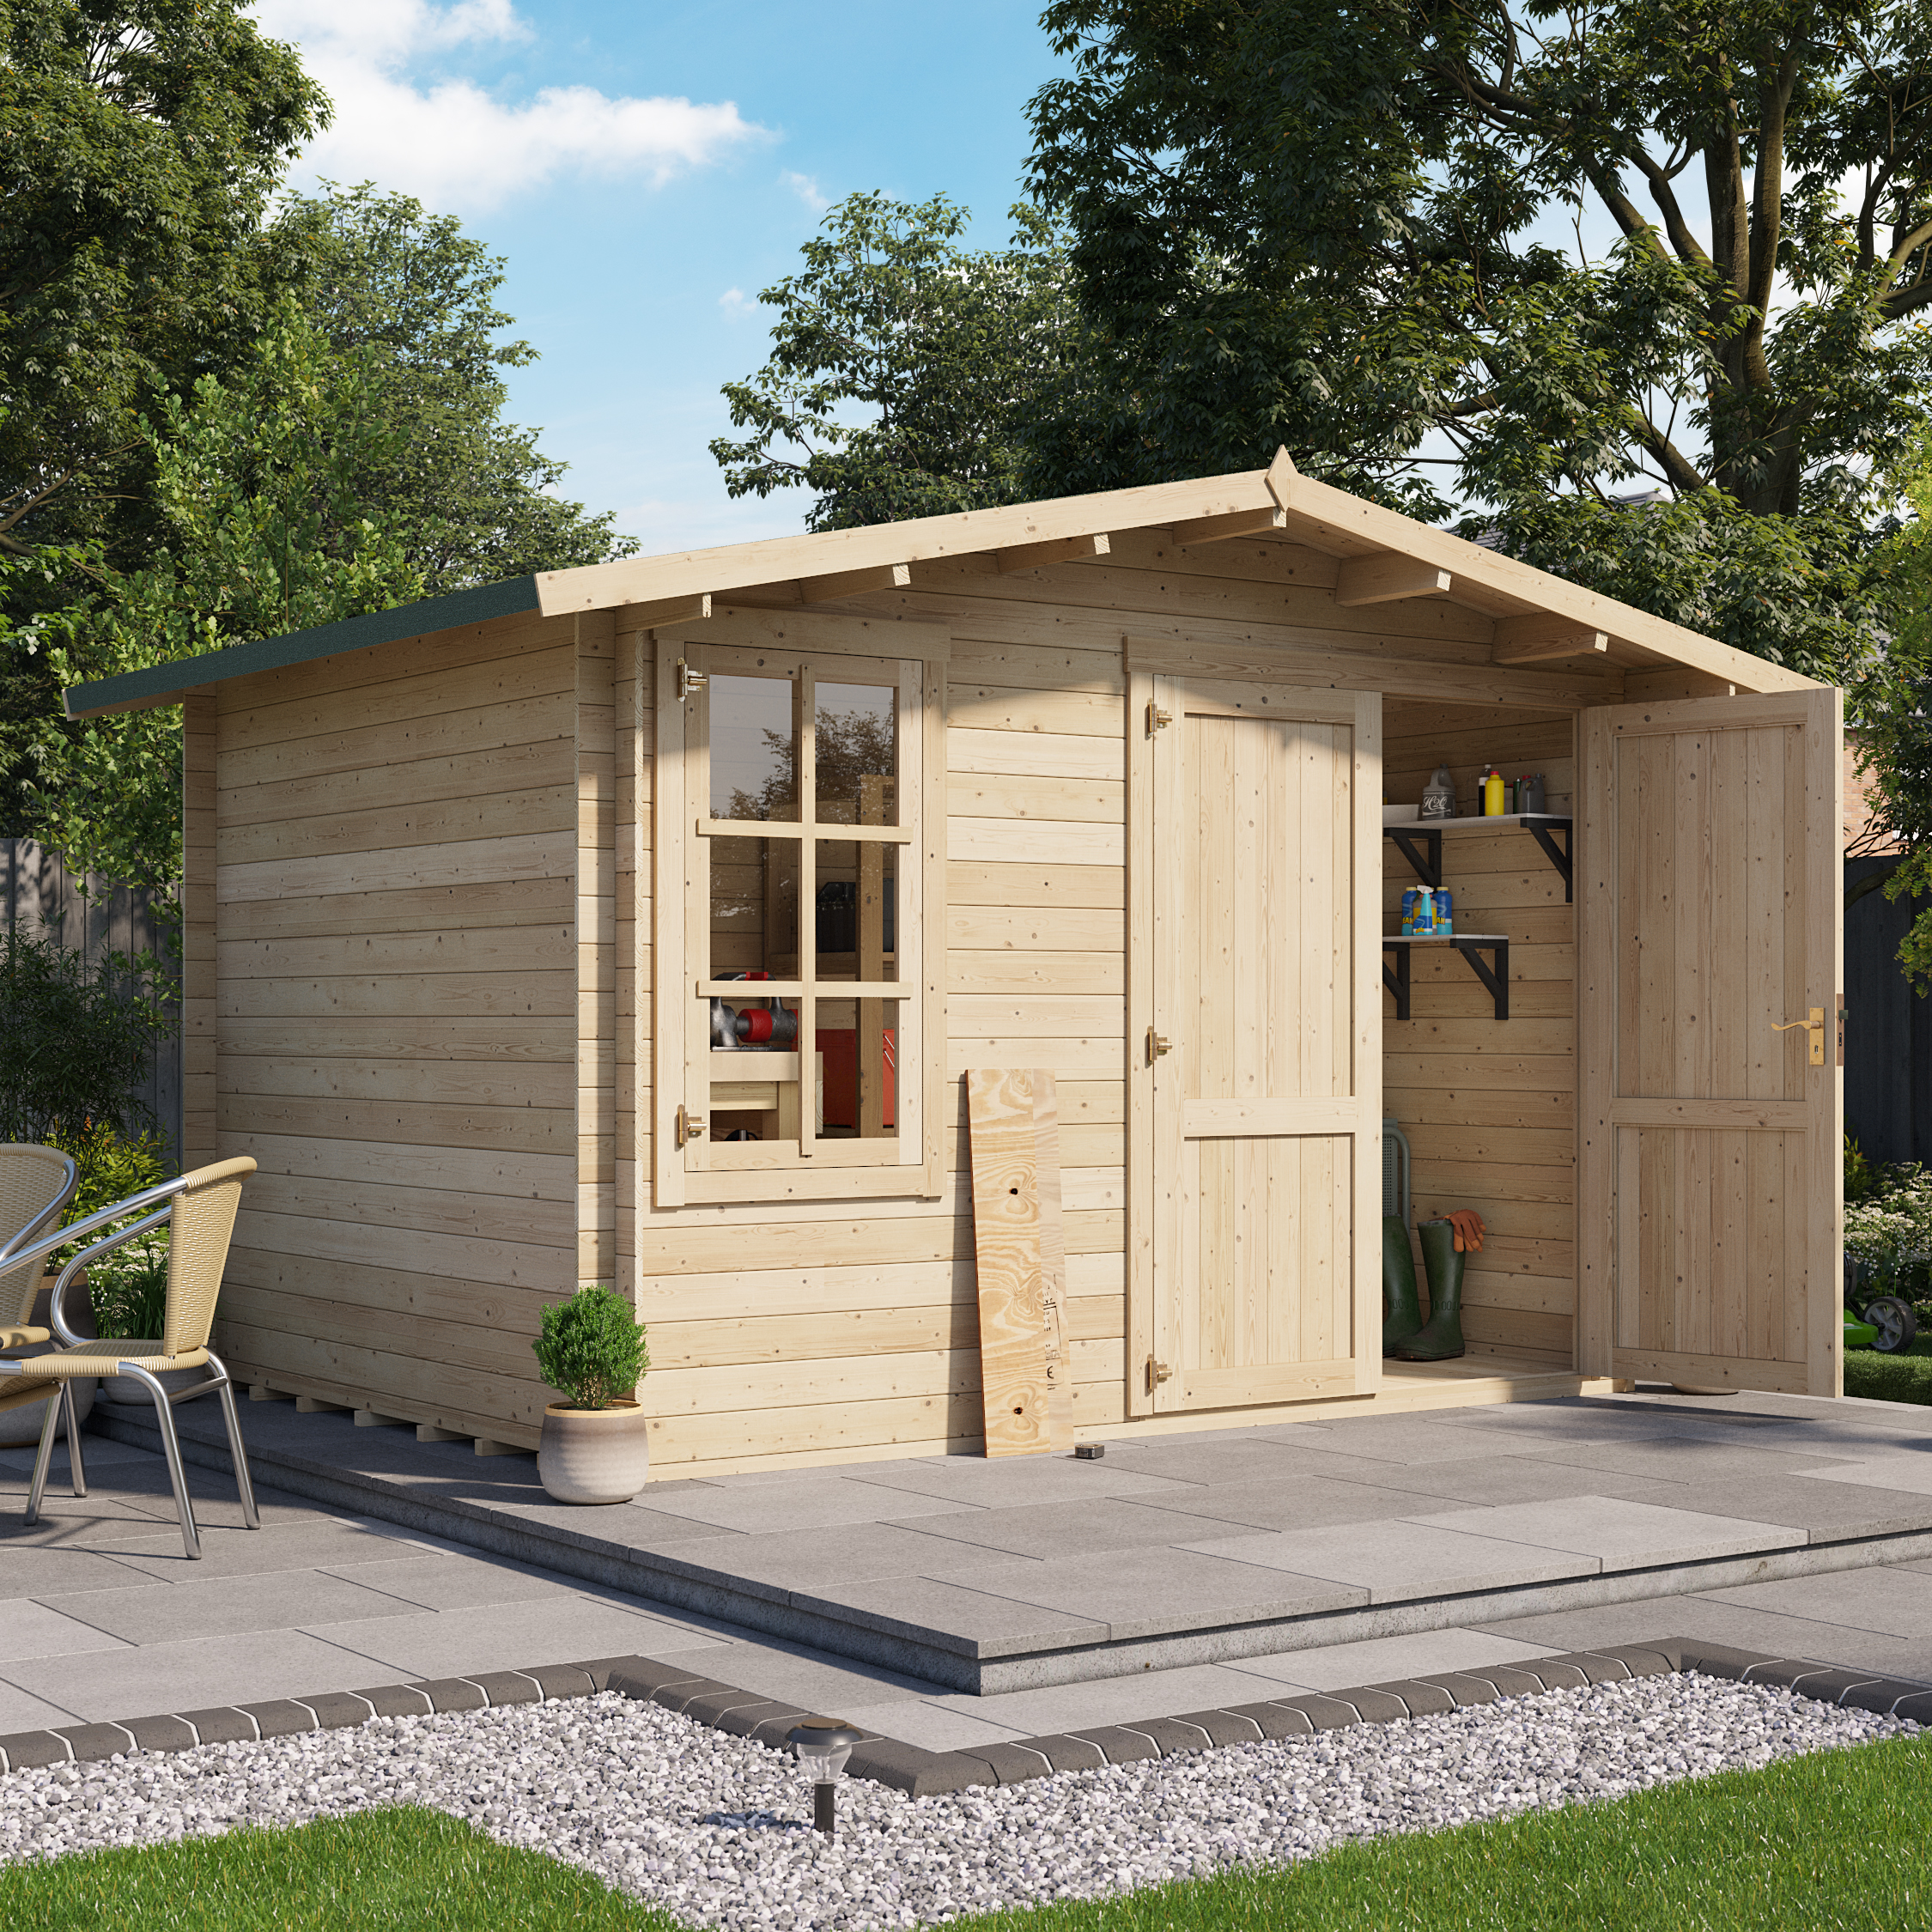 3.5 x 3 Log Cabin - BillyOh Alpine Workshop Log Cabin - W3.5 x D3.0 Wooden Garden Building